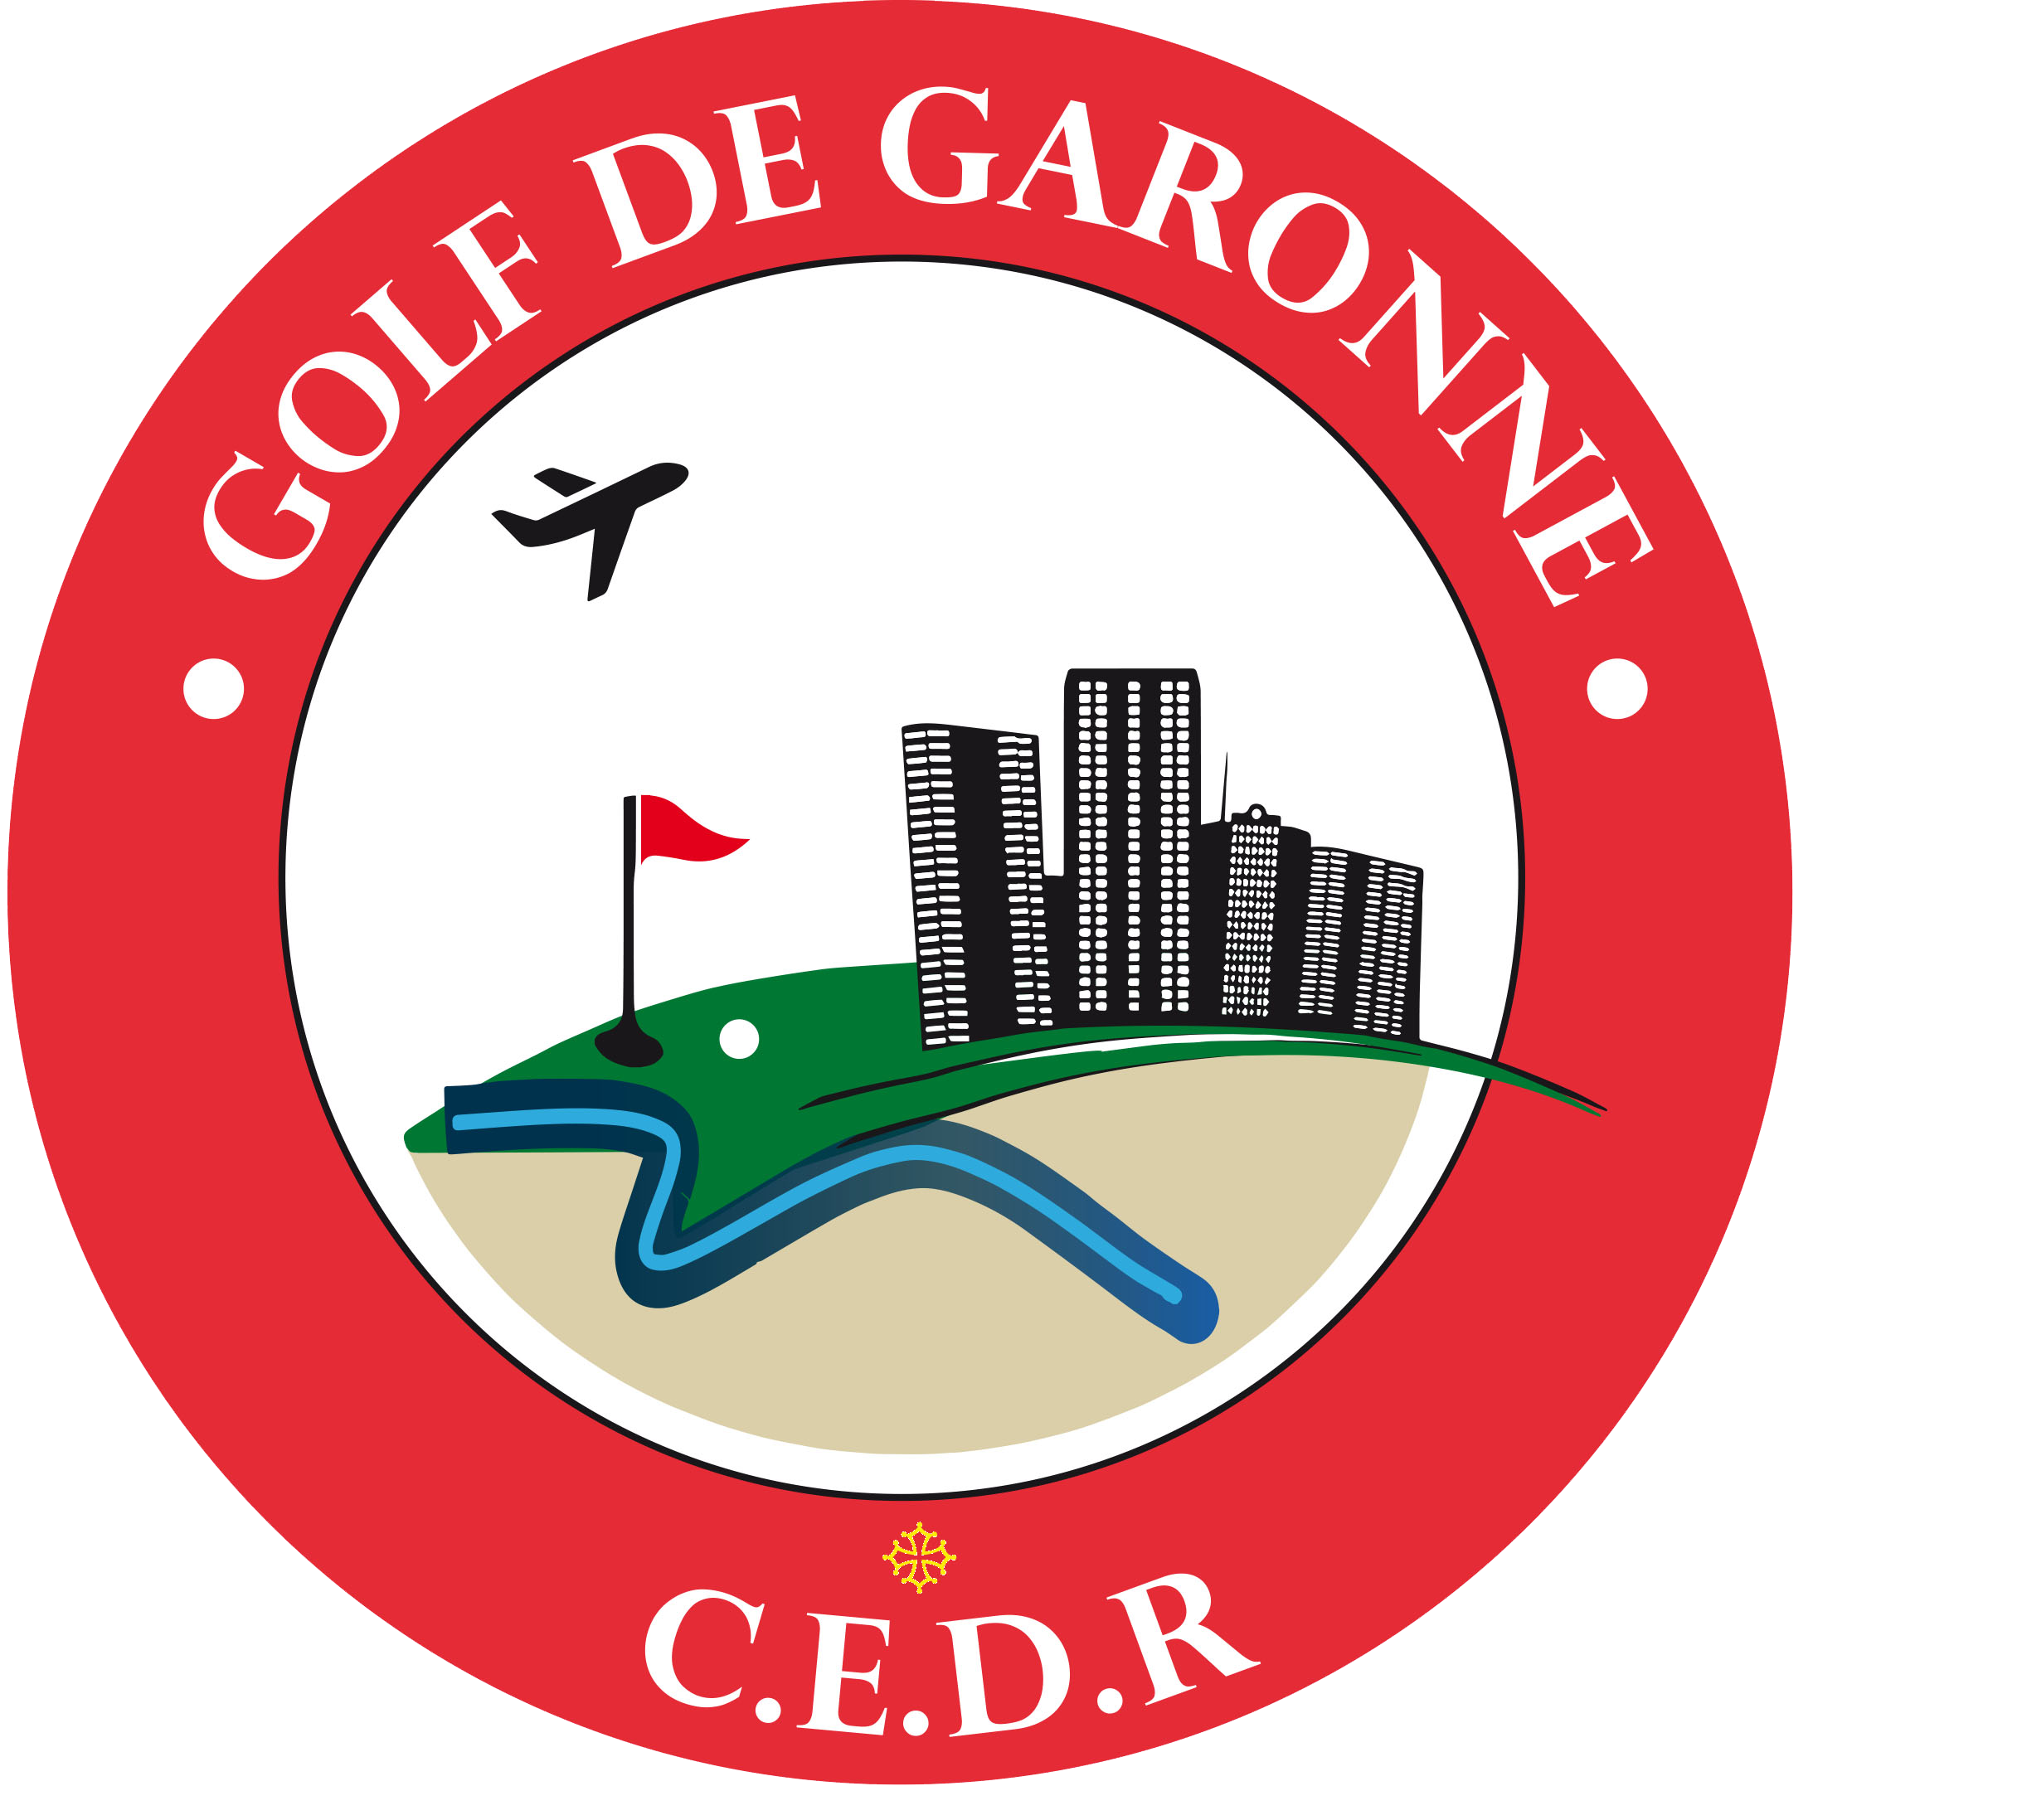 Les Premiers stages au golf de Garonne